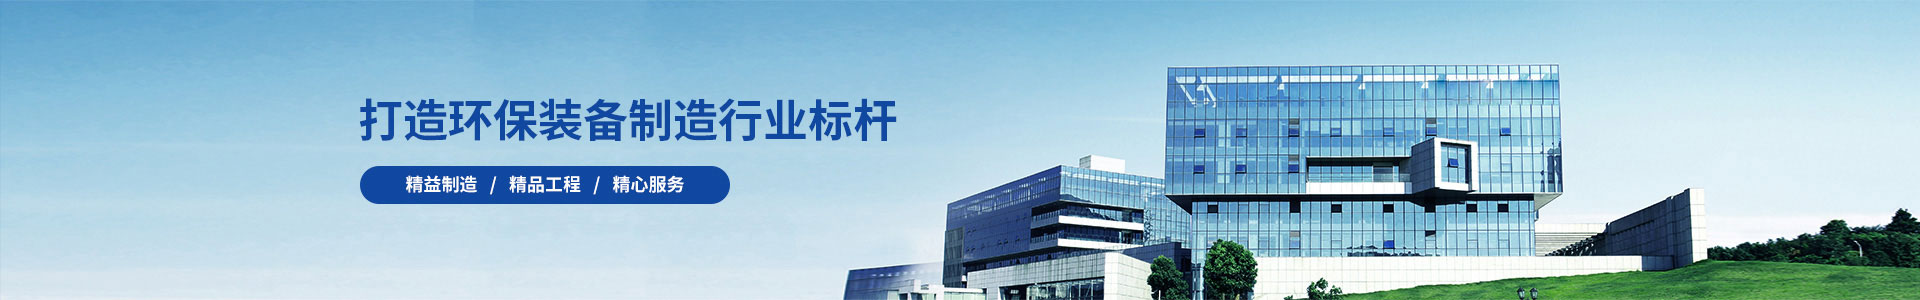 中国瑞林工程技术股份有限公司合同签订-新闻动态-江苏长源环保设备有限公司